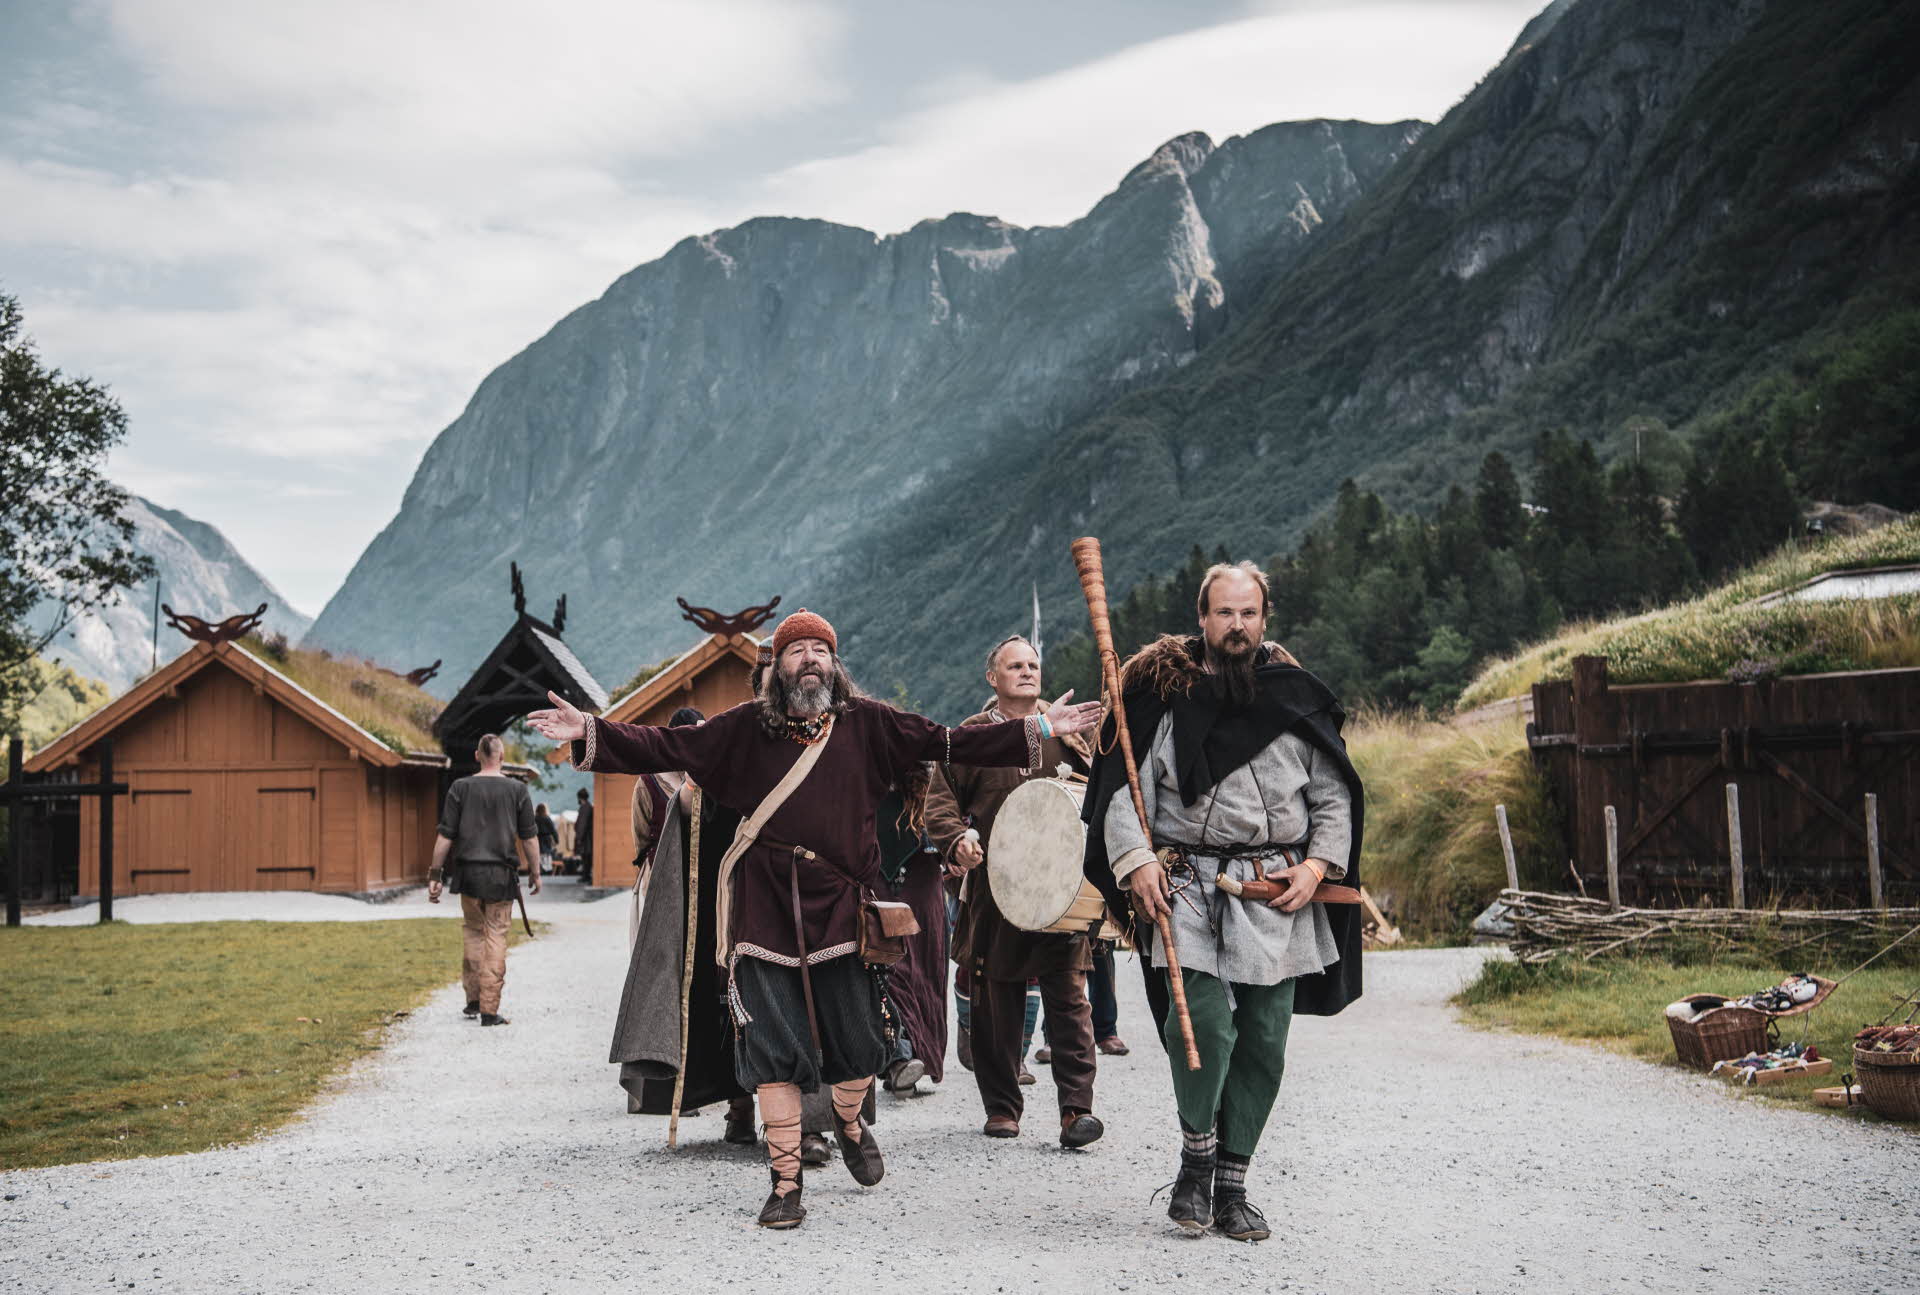 Un groupe d’hommes portant des instruments et accessoires vikings marche dans la Vallée viking. On voit de hautes montagnes en arrière-plan.